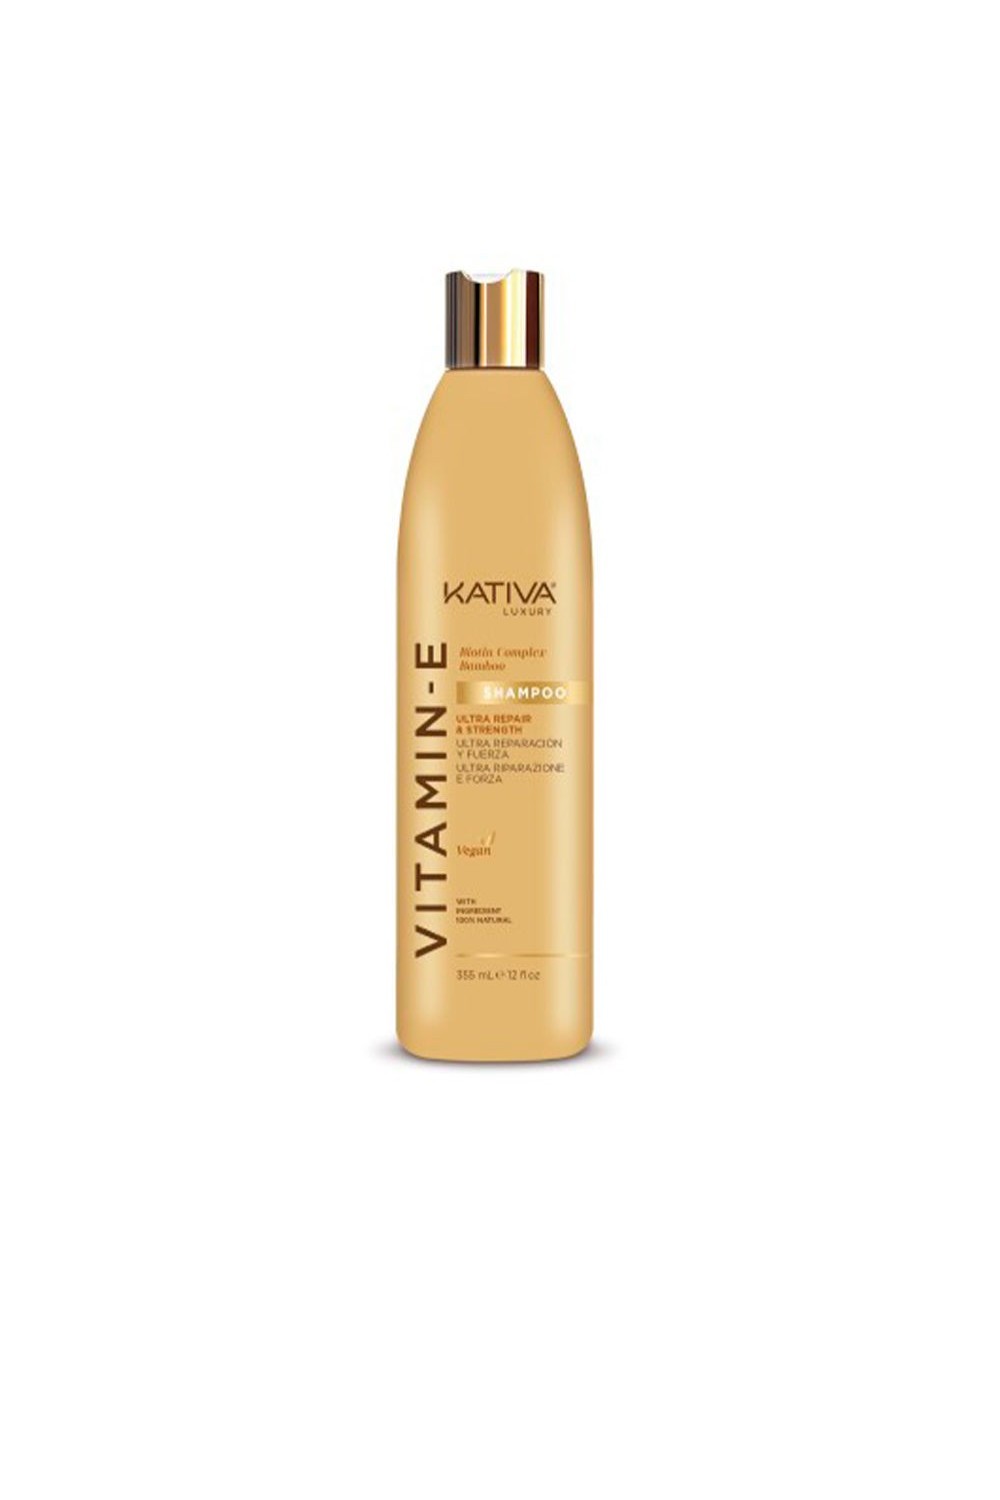 Kativa Vitamina e Biotina y Bamboo Shampoo 355ml